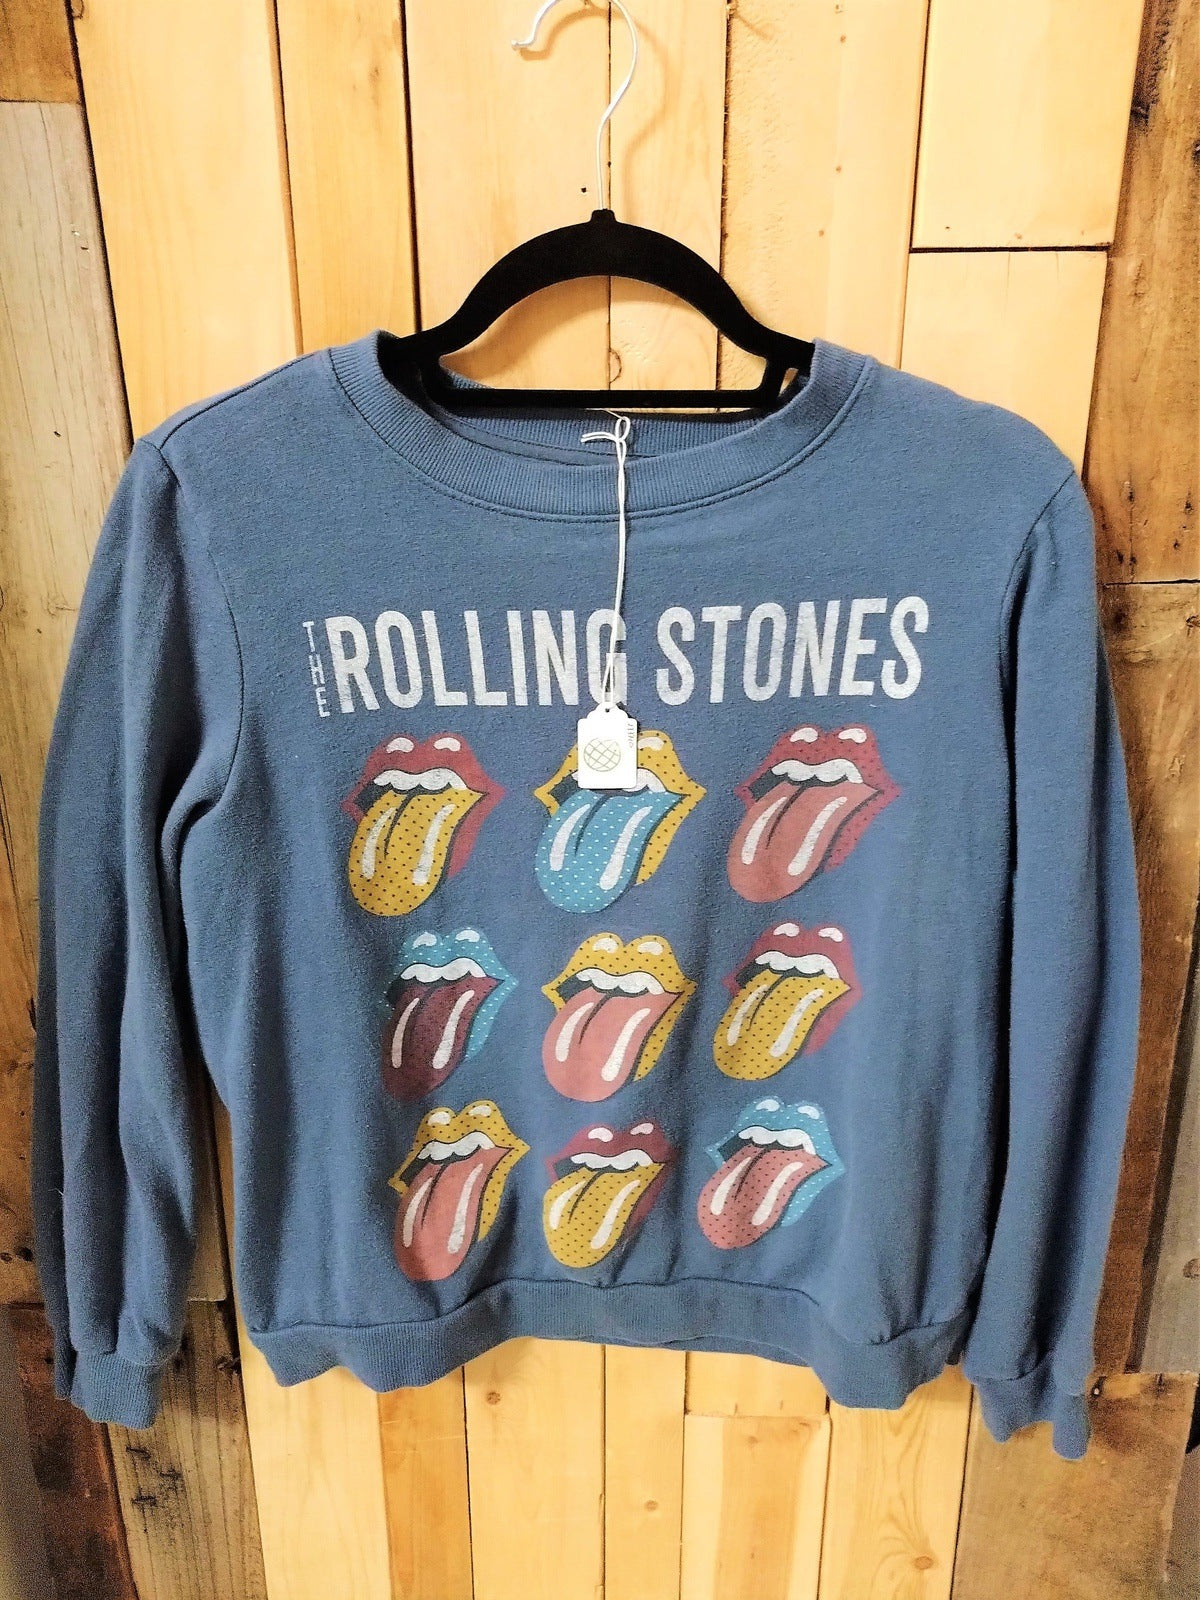 Rolling Stones Official Merchandise Sweatshirt Size Medium